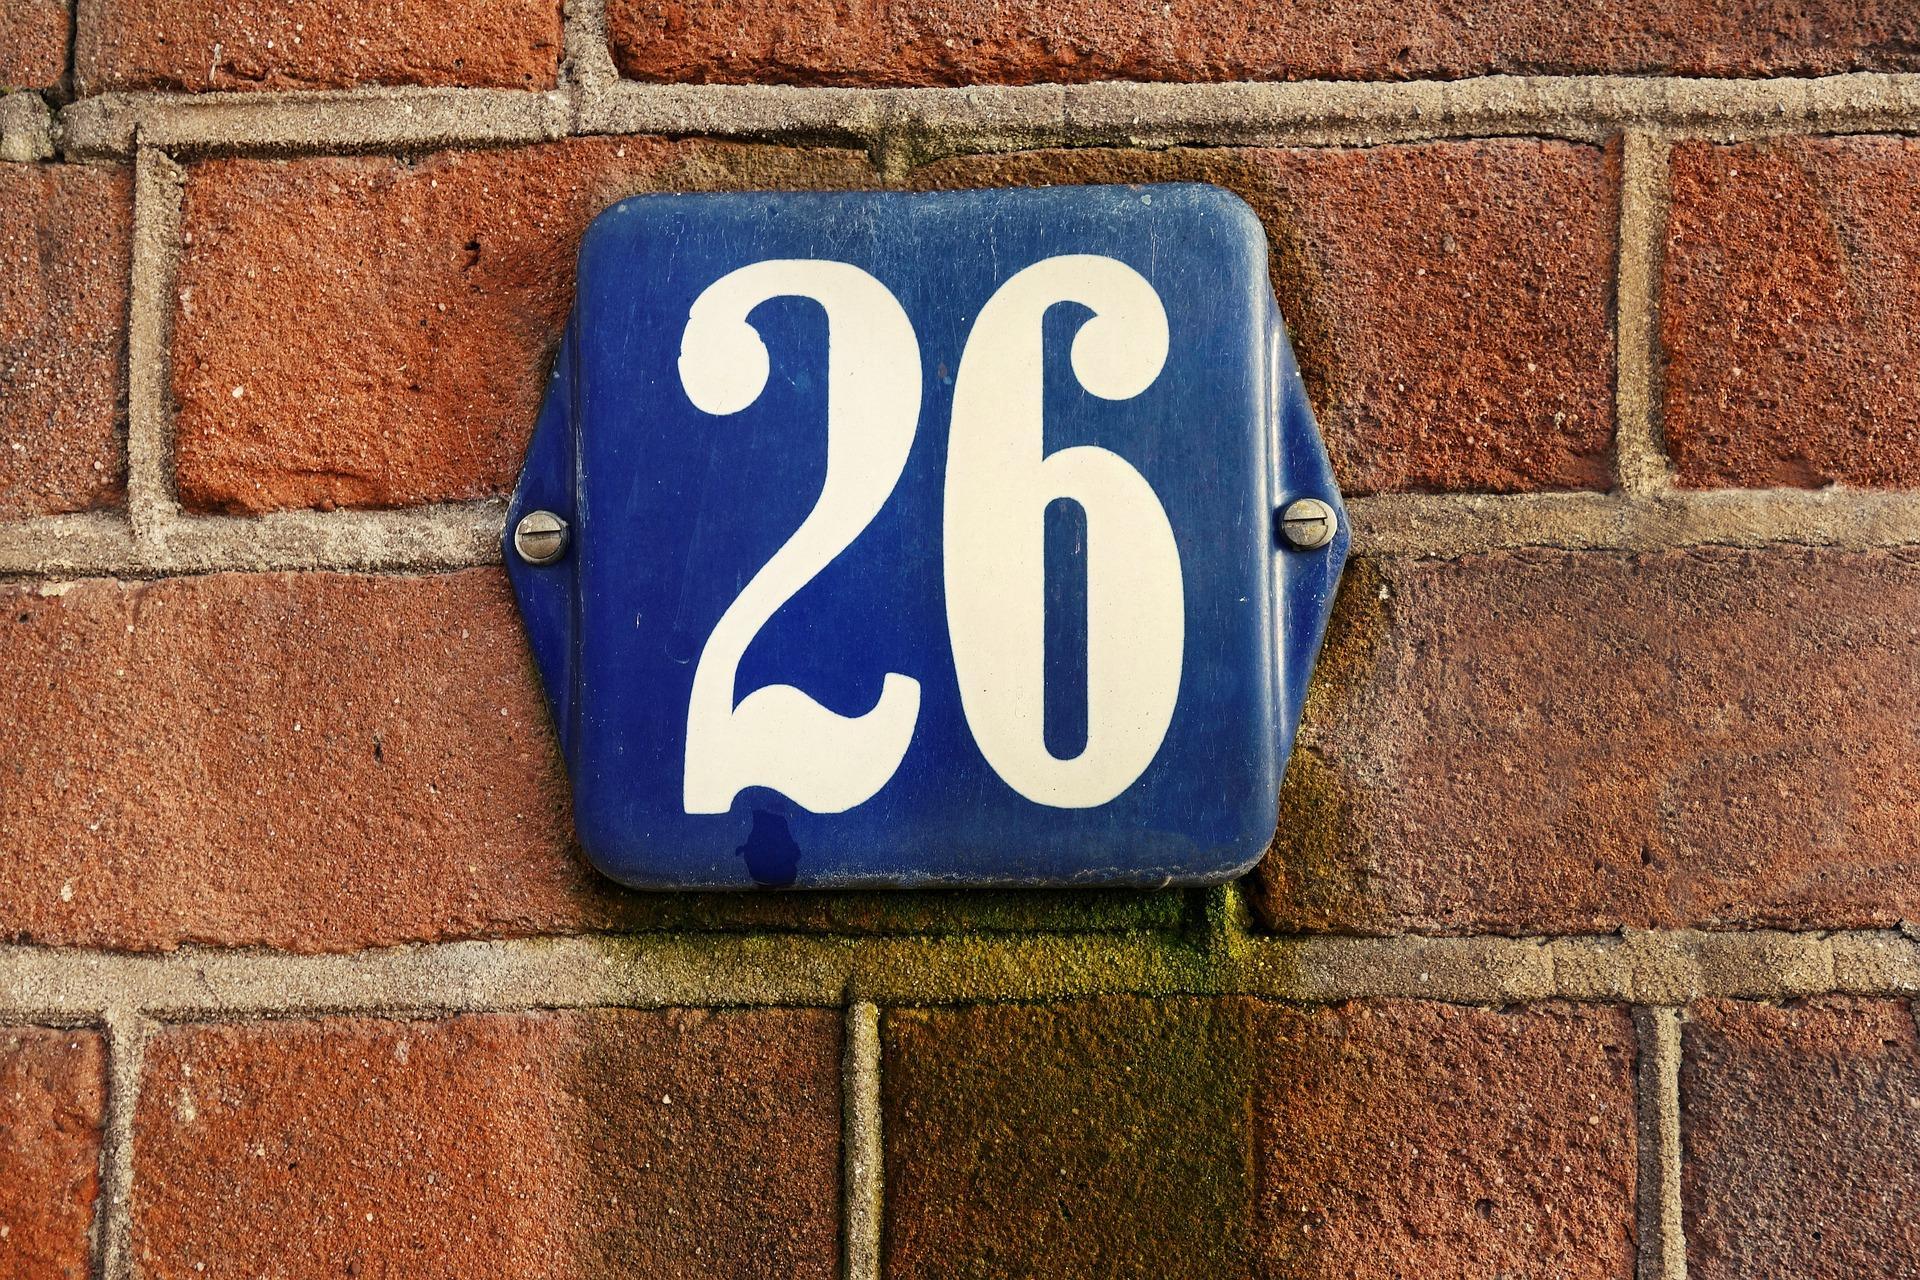 Blauw bordje met nummer 26 op een stukje muur.